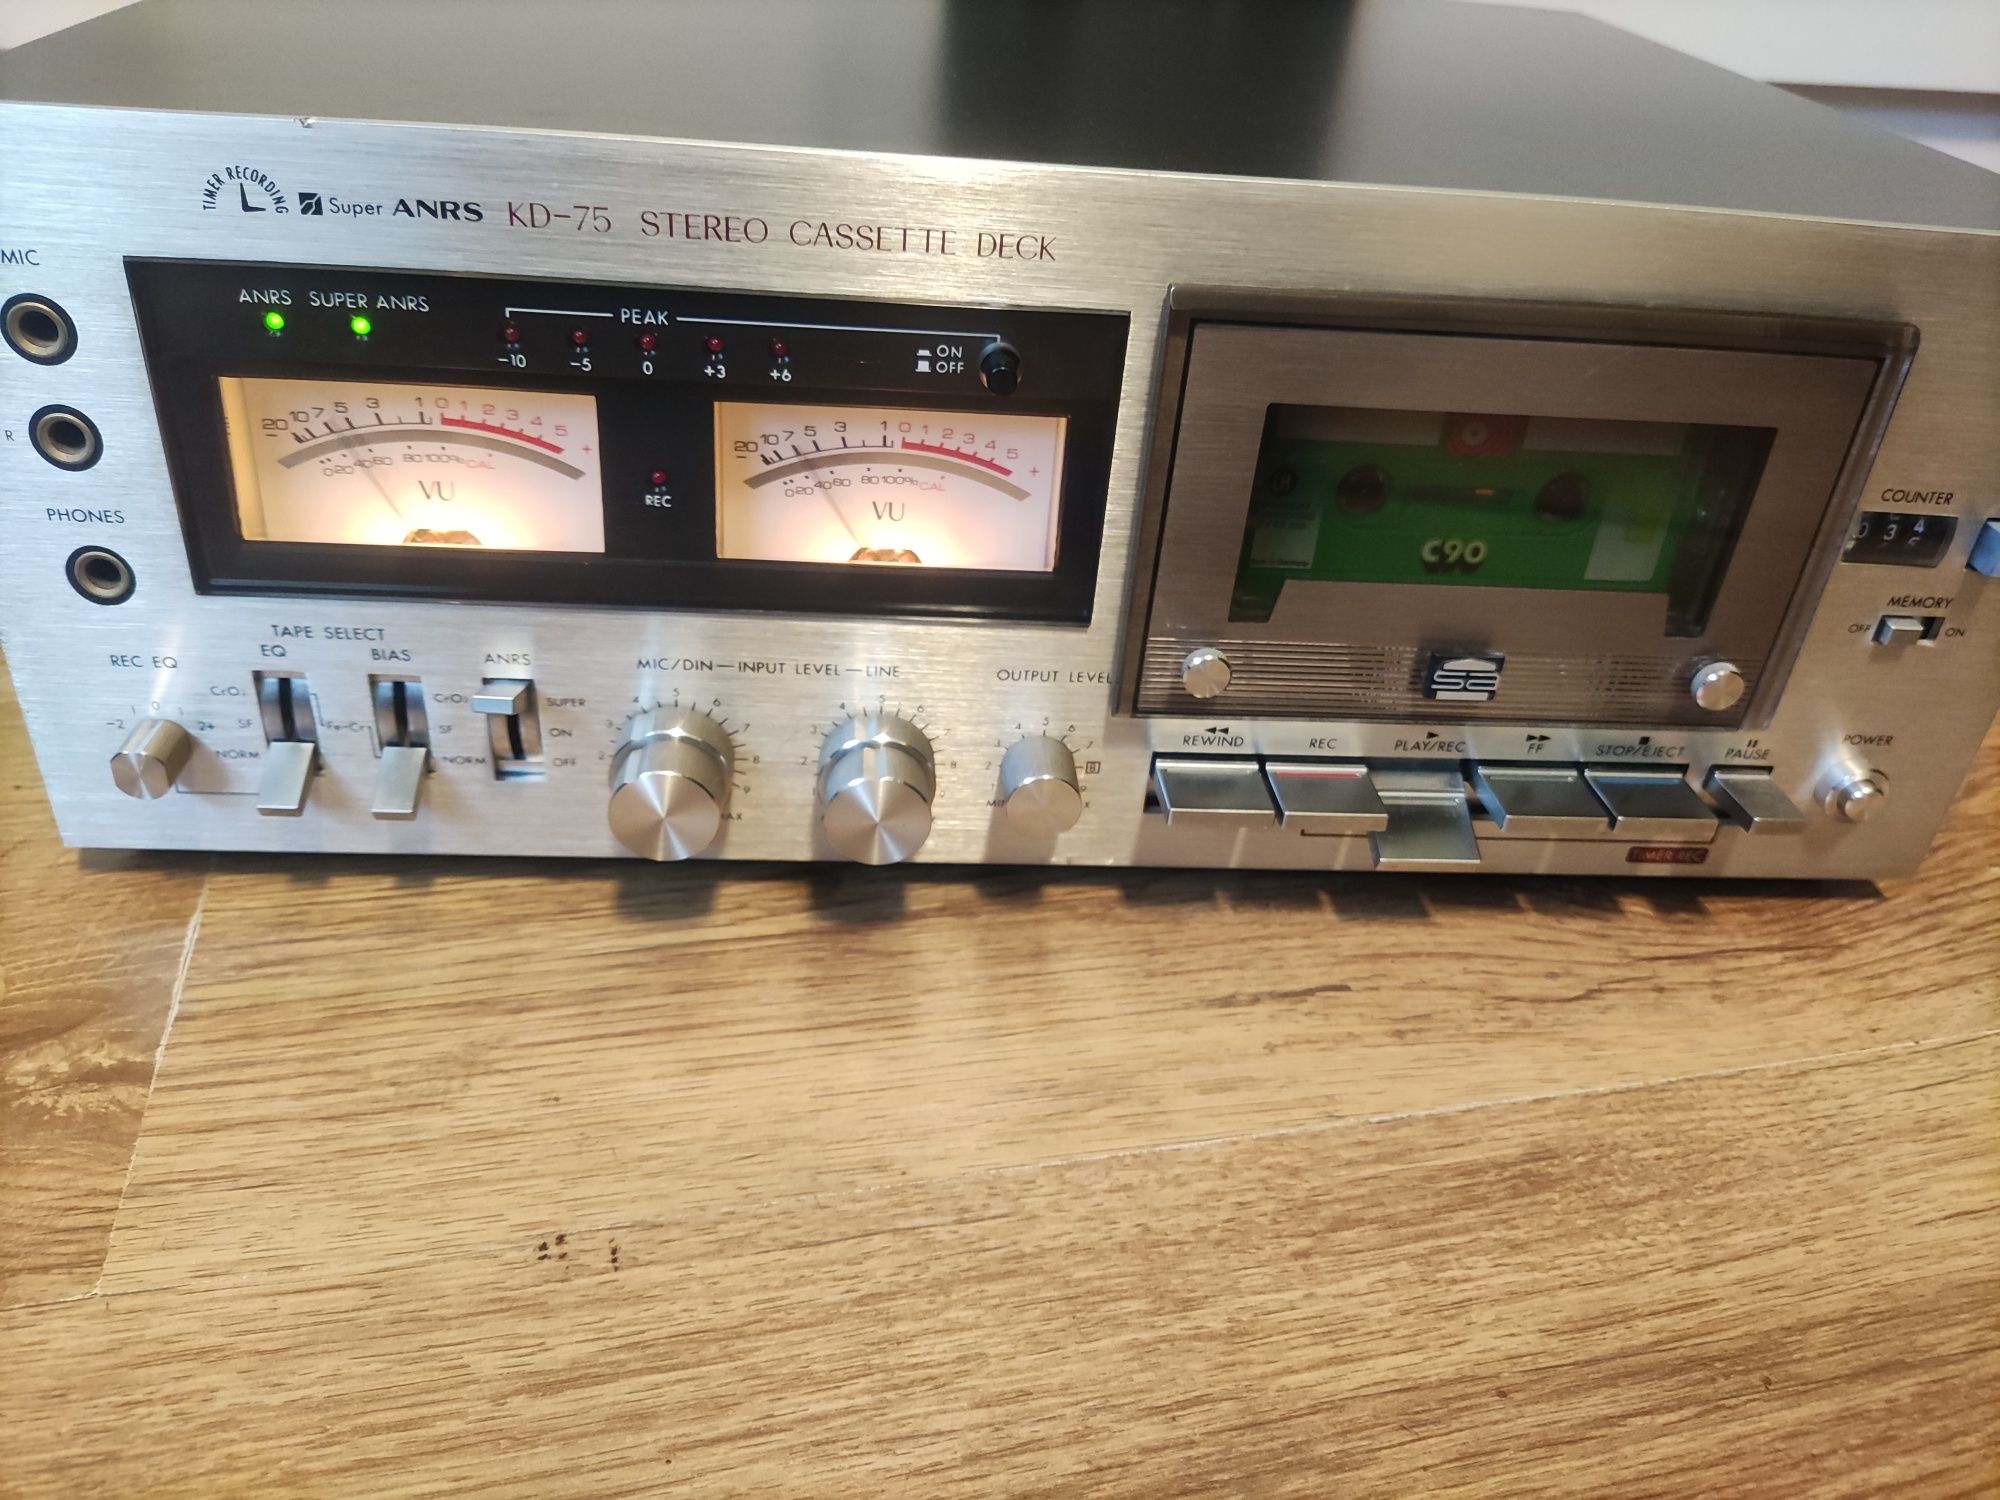 JVC KD-75 stereo cassette deck vintage odtwarzacz kaset piękny sprawny